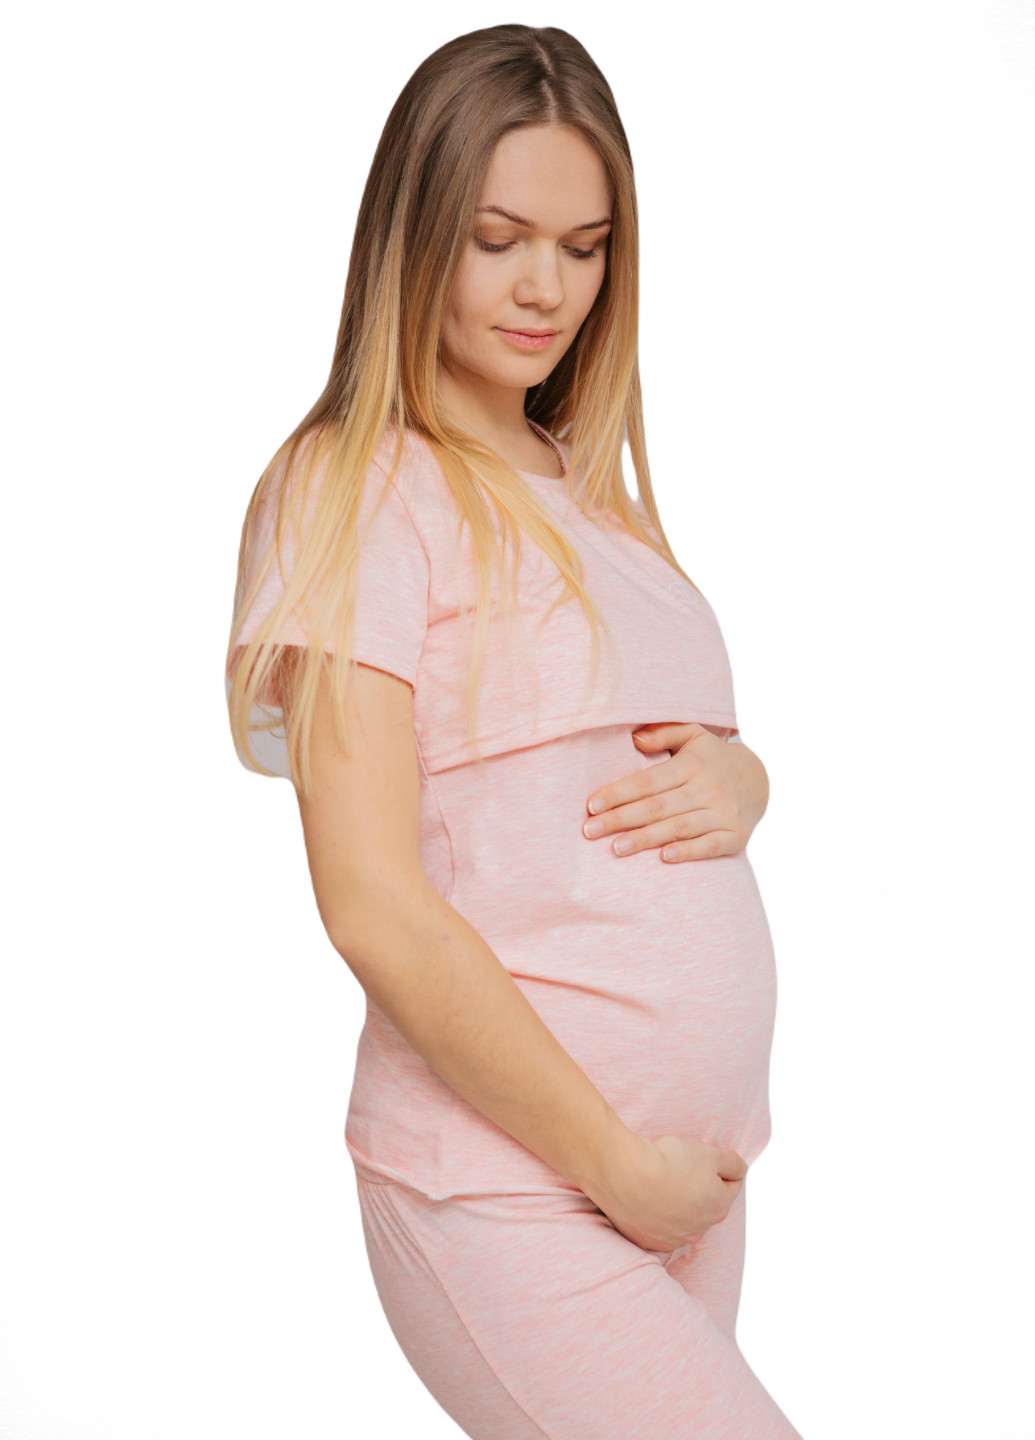 Розовая всесезон 88296038829(55)06 пижама для беременных и кормящих с секретом для кормления (футболка + брюки) розовая футболка + брюки HN Рита